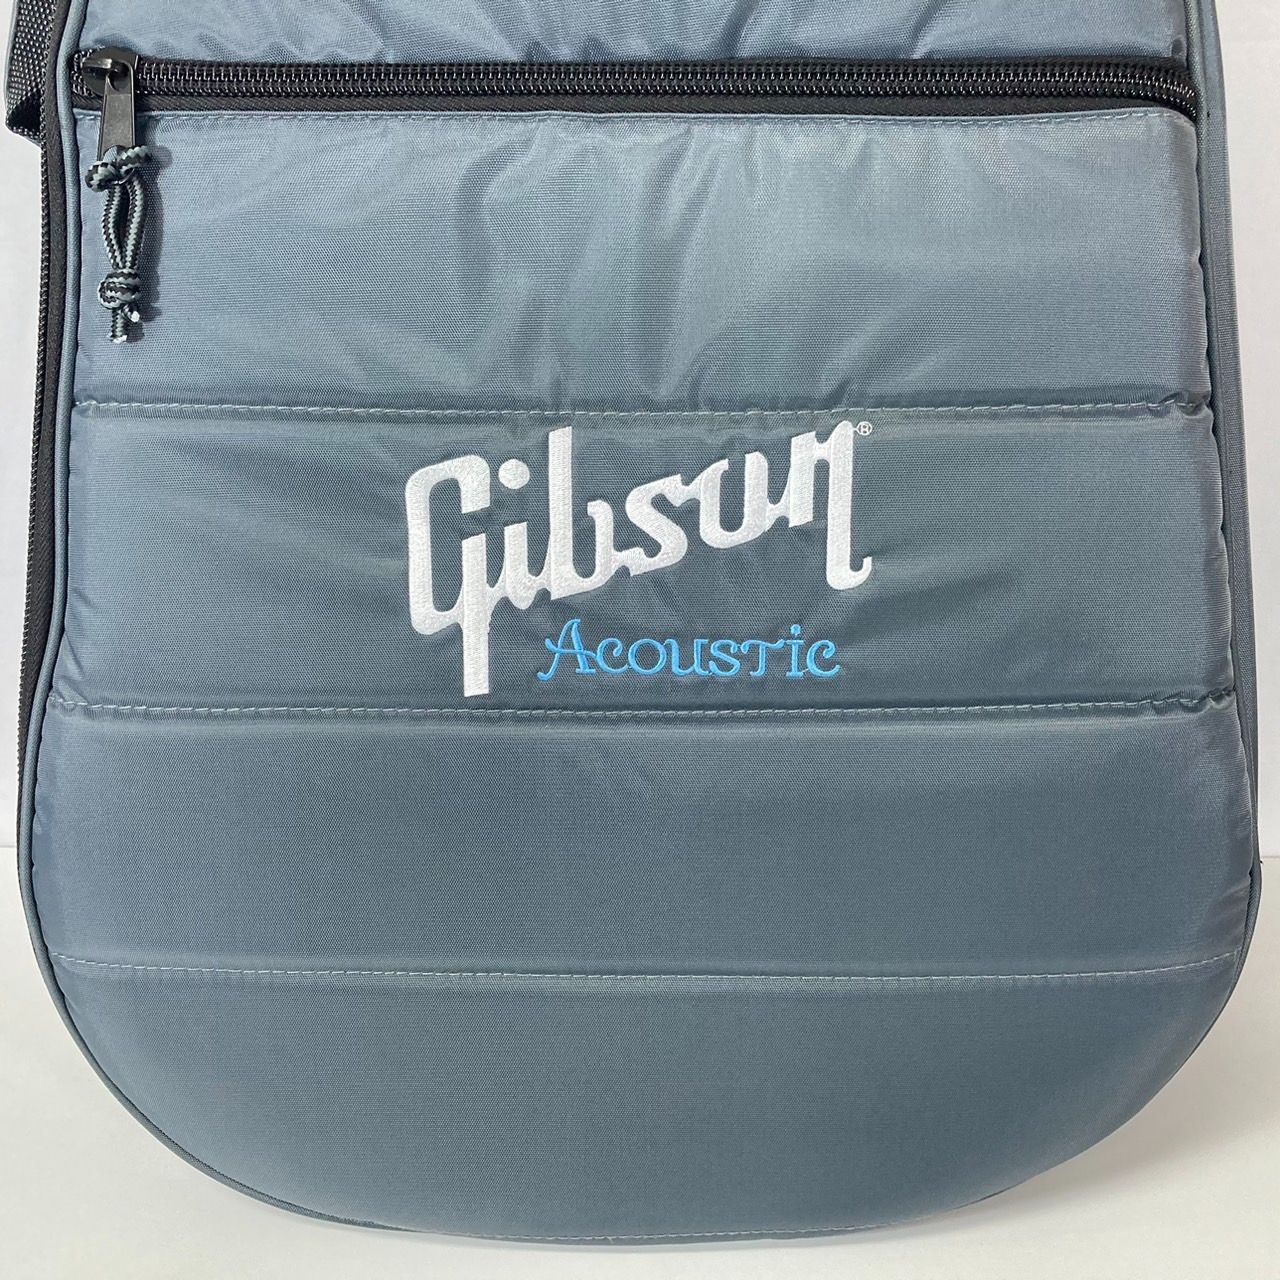 Gibson アコギ用セミハードケース(ギグバッグ)-